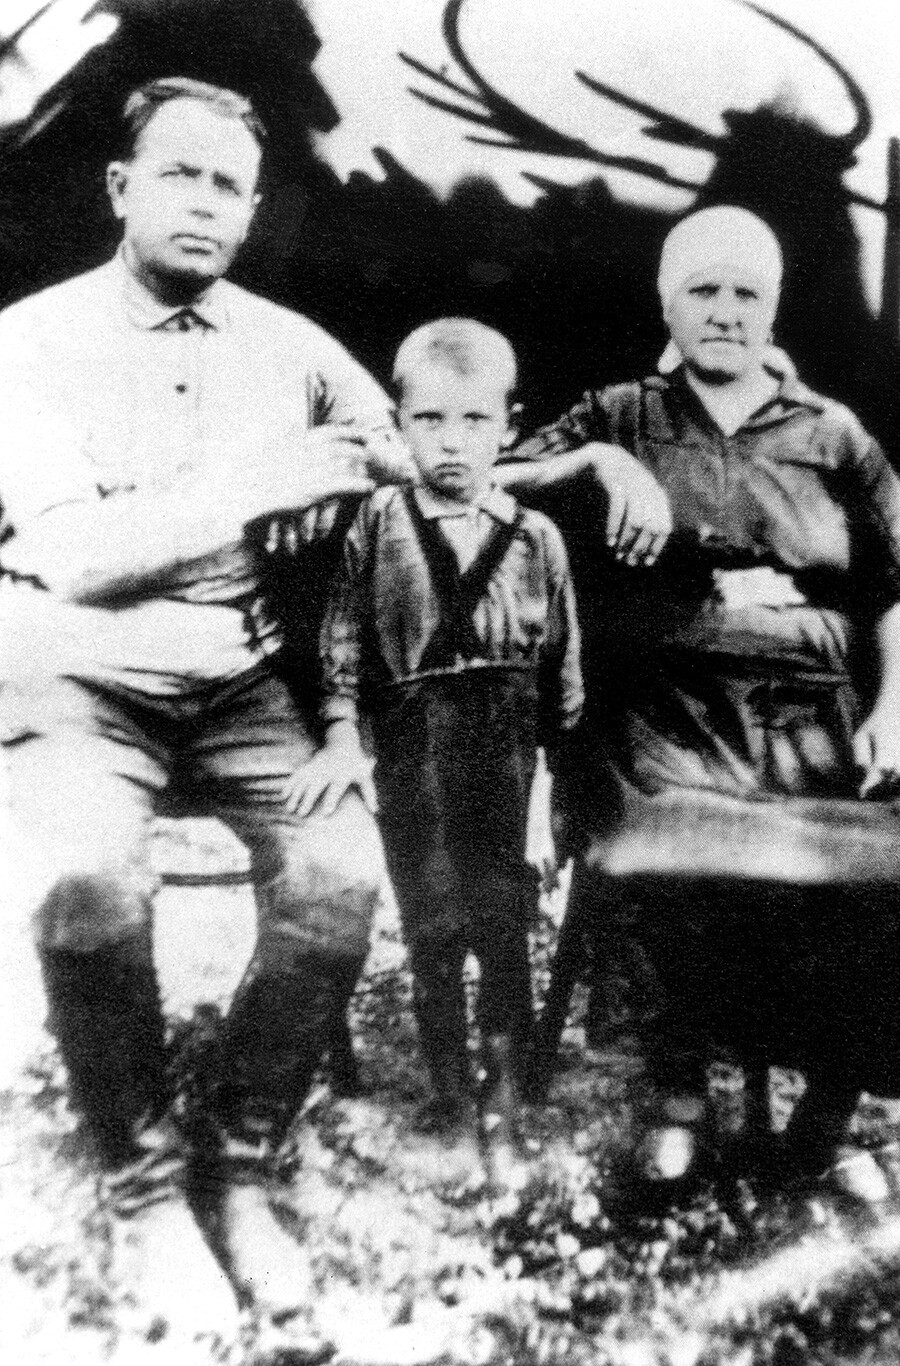 Mikhail a 4 anni con i nonni Pantelej (a sinistra) e Vasilisa Gopkalo. Privolnoe, Kraj di Stavropol (Russia meridionale), 1937 circa